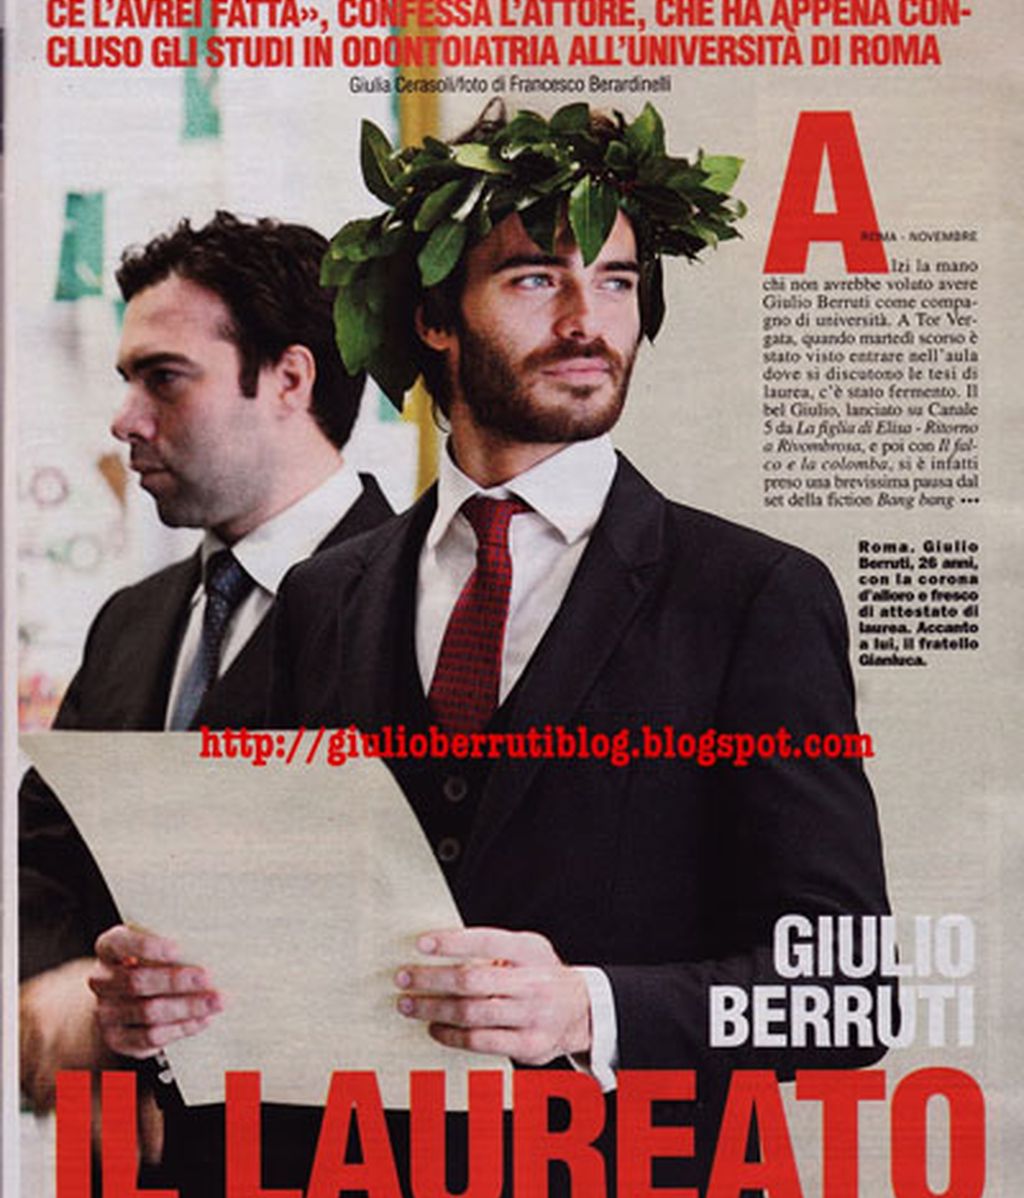 Giulio Berruti, ese hombre